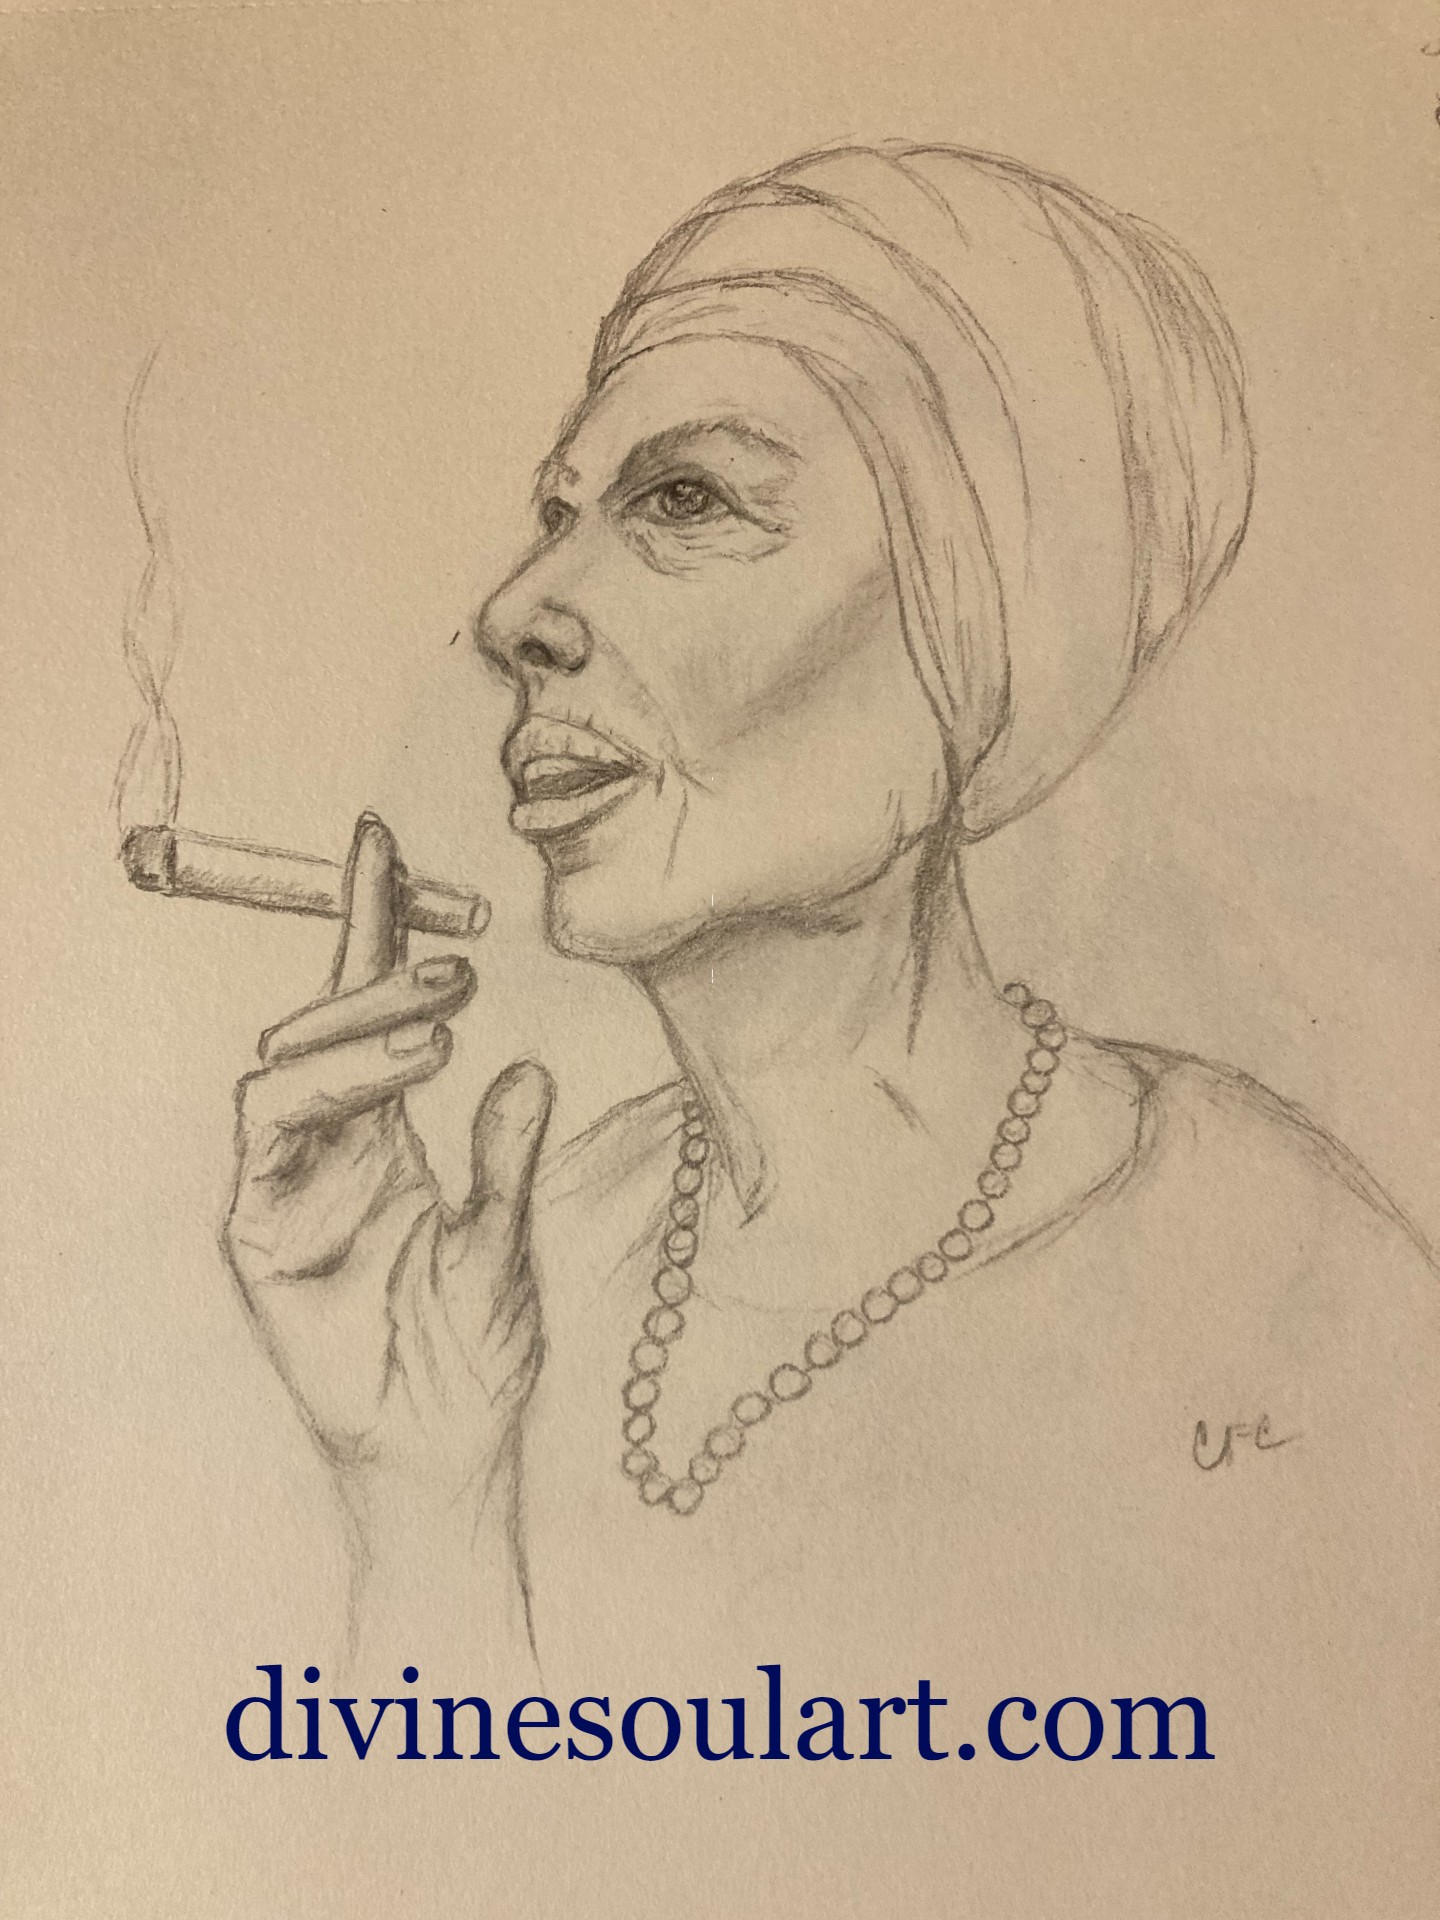 santera and cigar